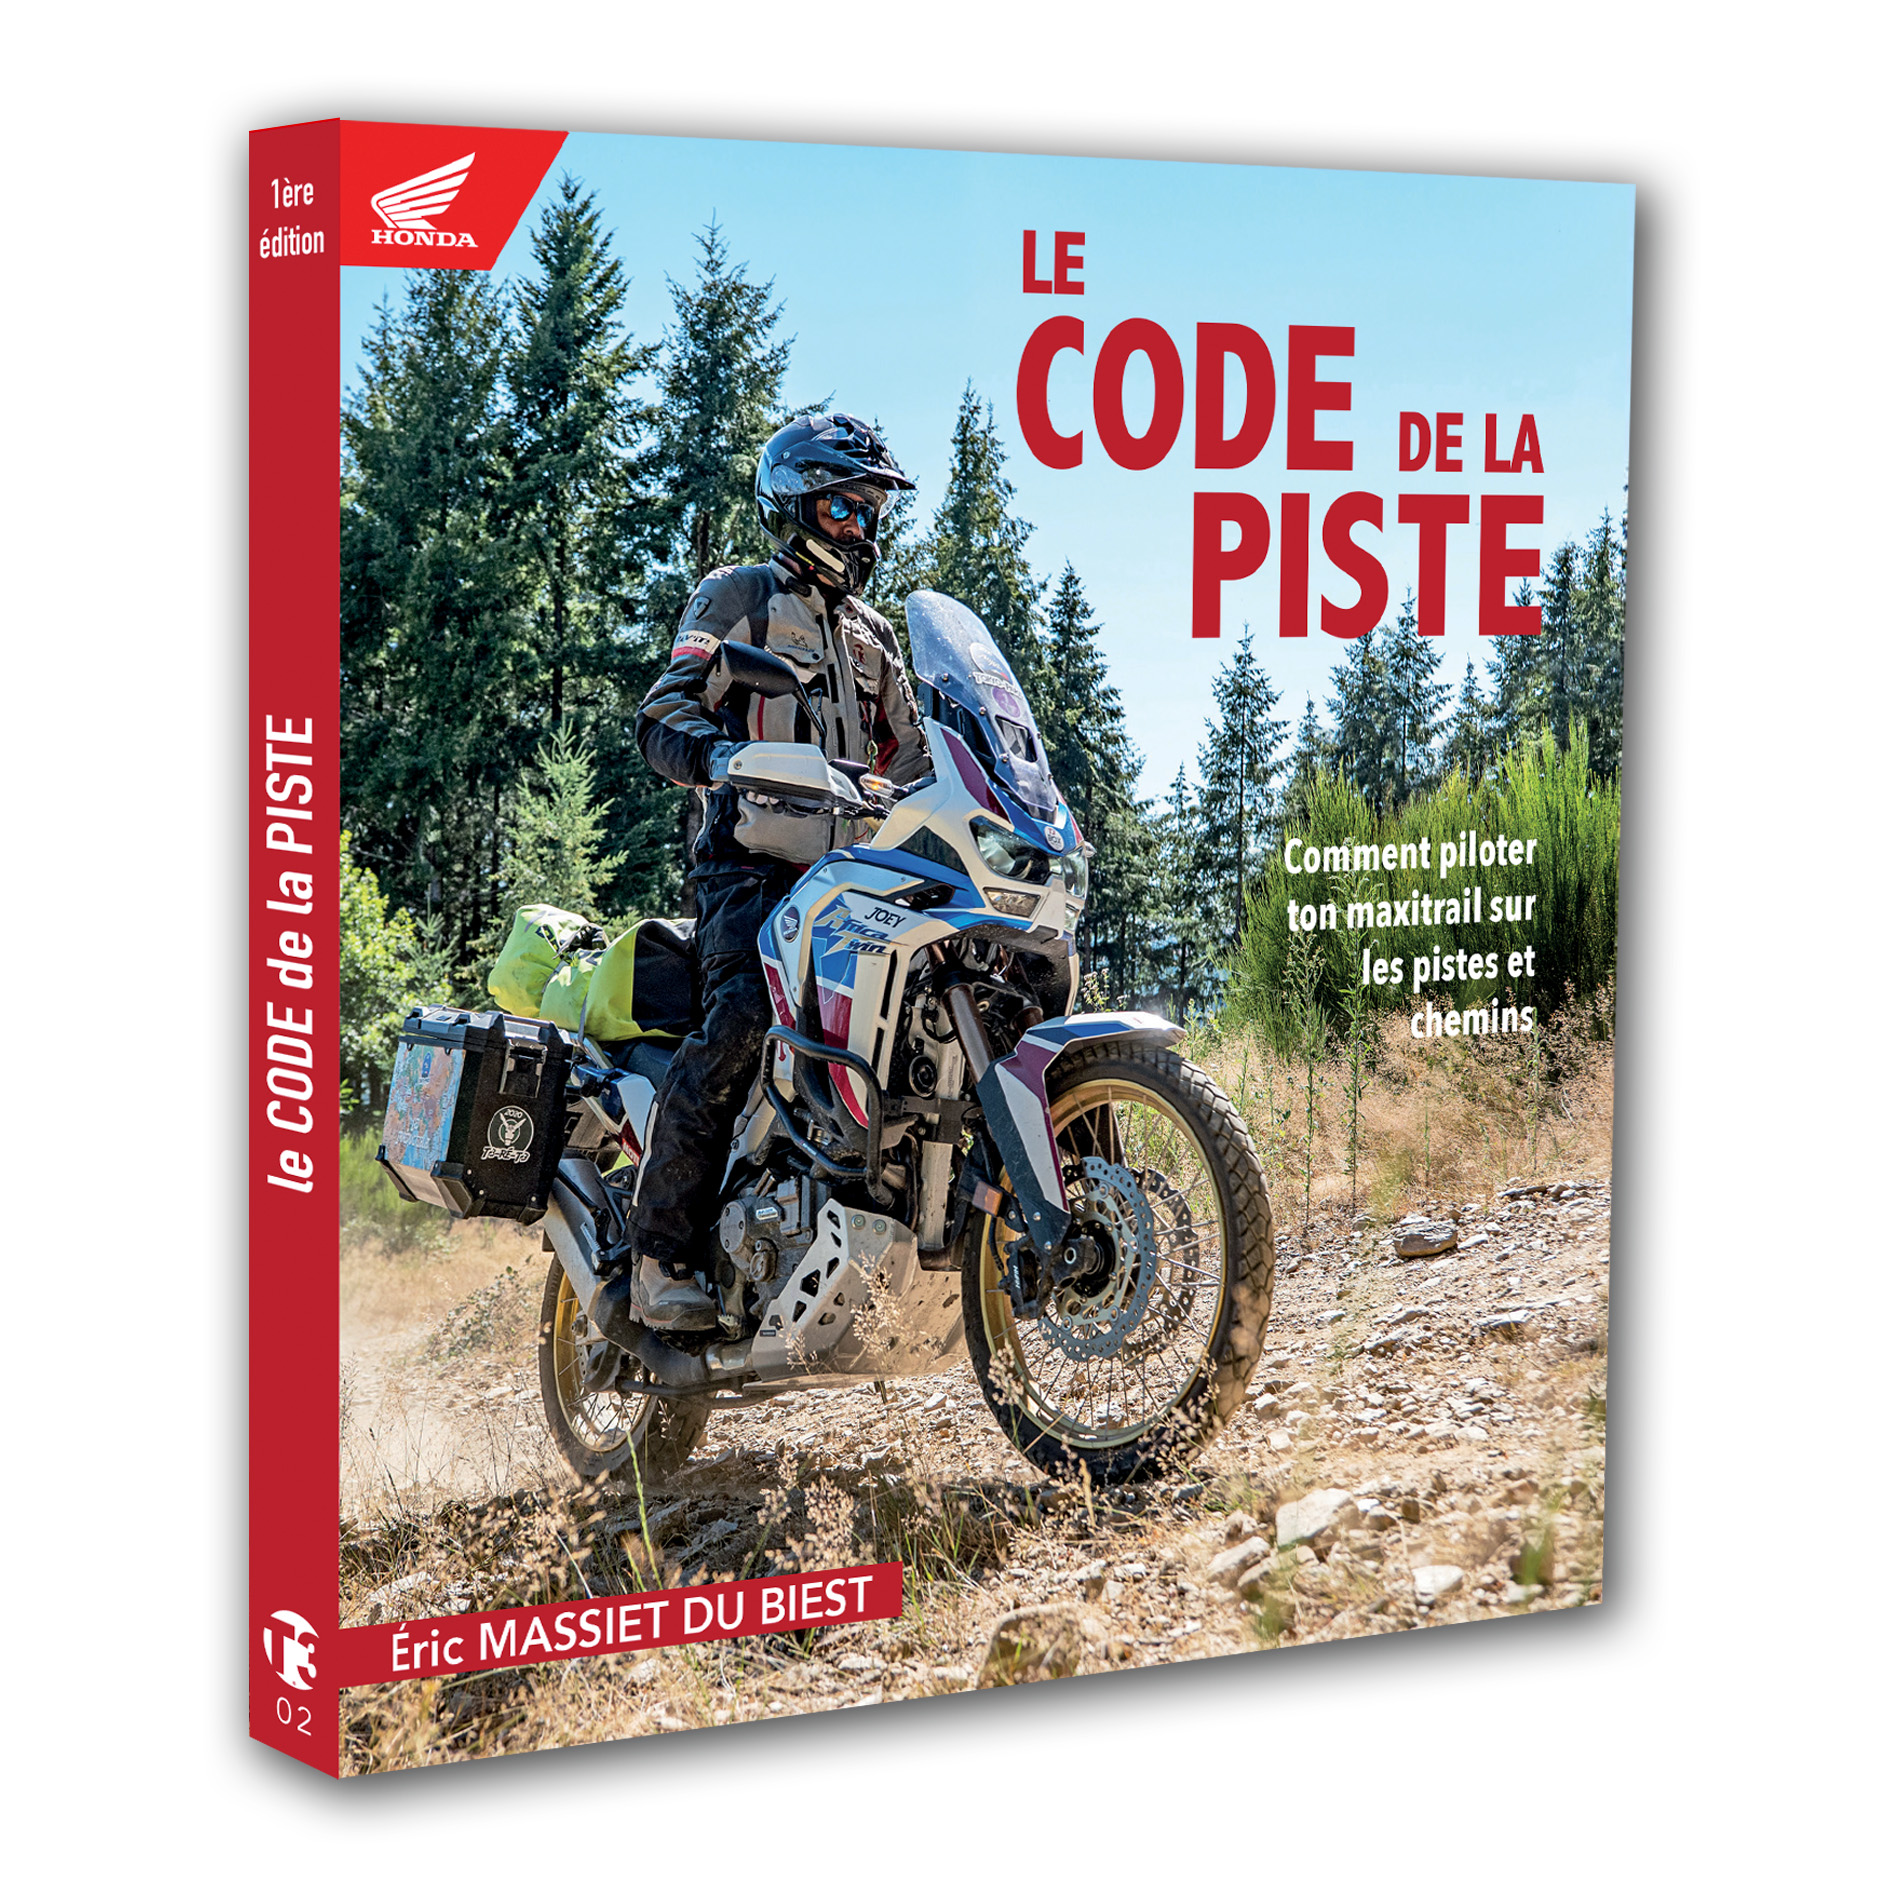 Le Code de la Piste est le guide pratique pour apprendre à piloter une moto maxi trail sur les chemins et pistes non asphaltés.